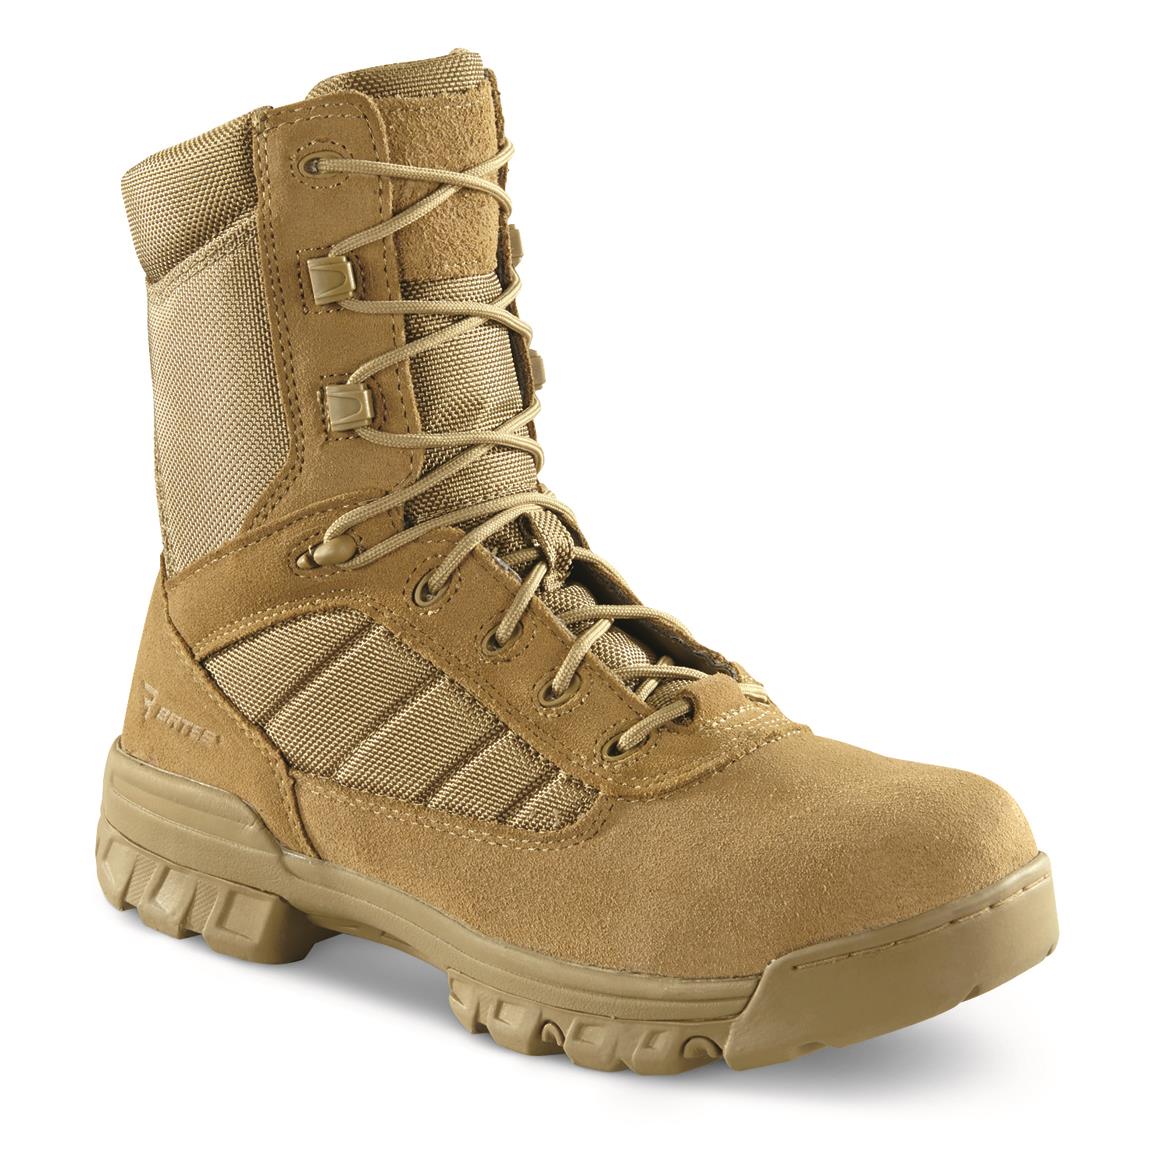 Bates Men's 8" Tactical Sport Side Zip Boots, Coyote